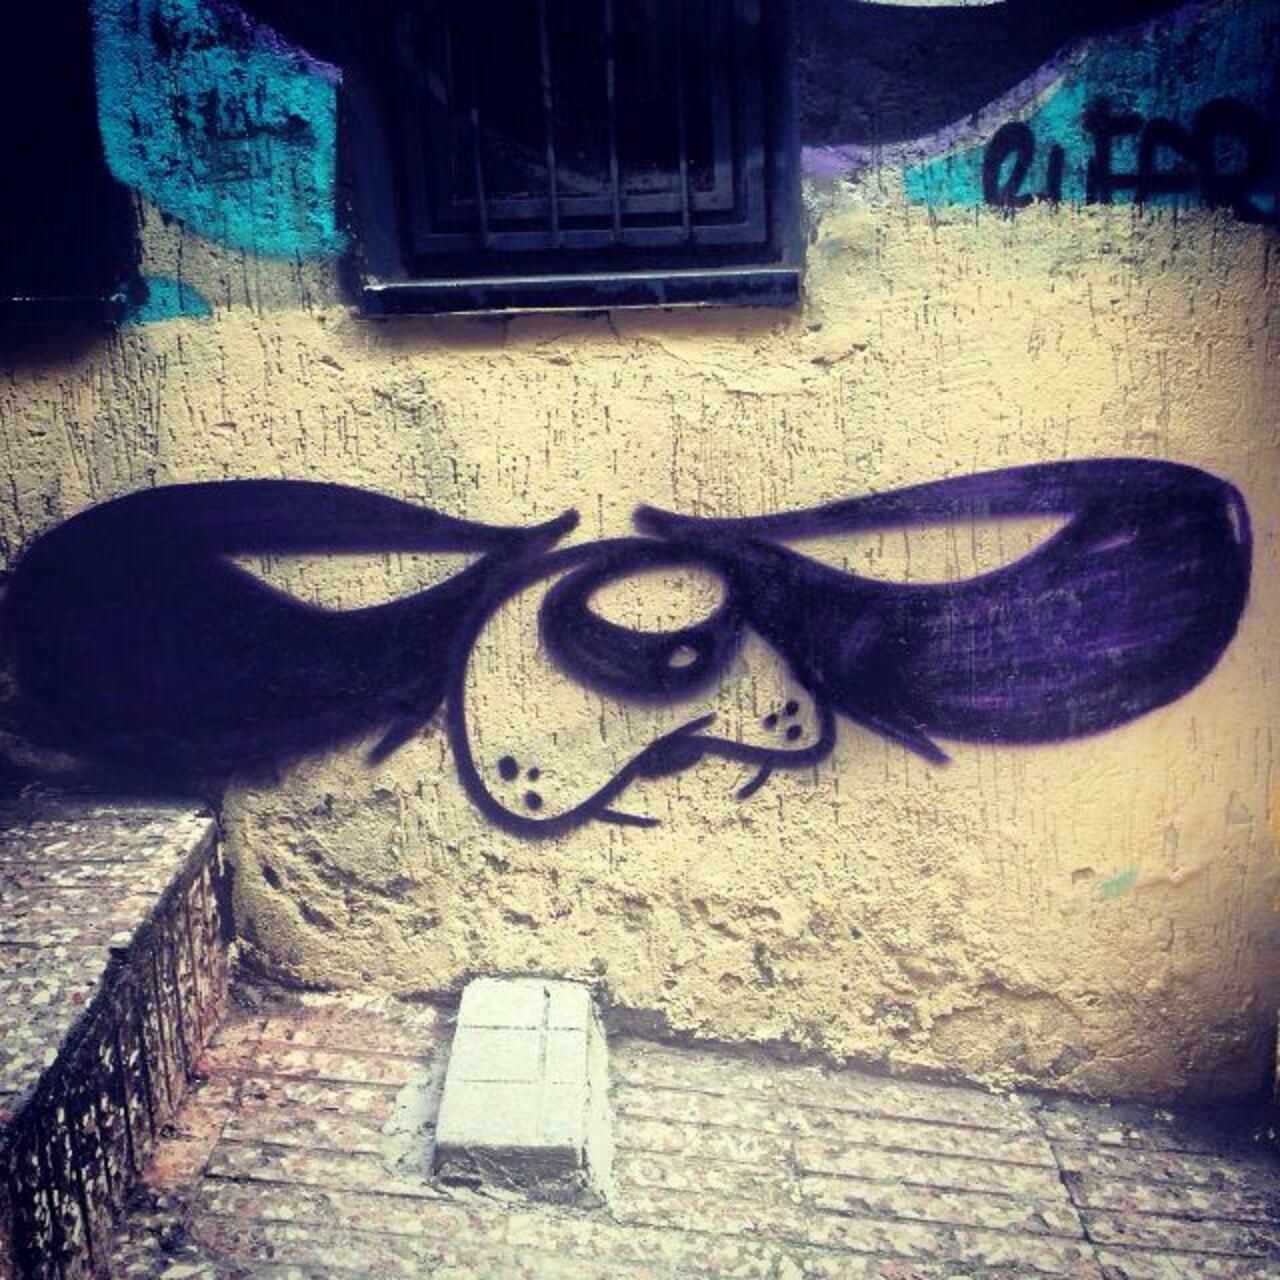 RT @5putnik1: Panda'monium   • #streetart #graffiti #art #panda #funky #dope . : http://t.co/AHgCw4fr7W